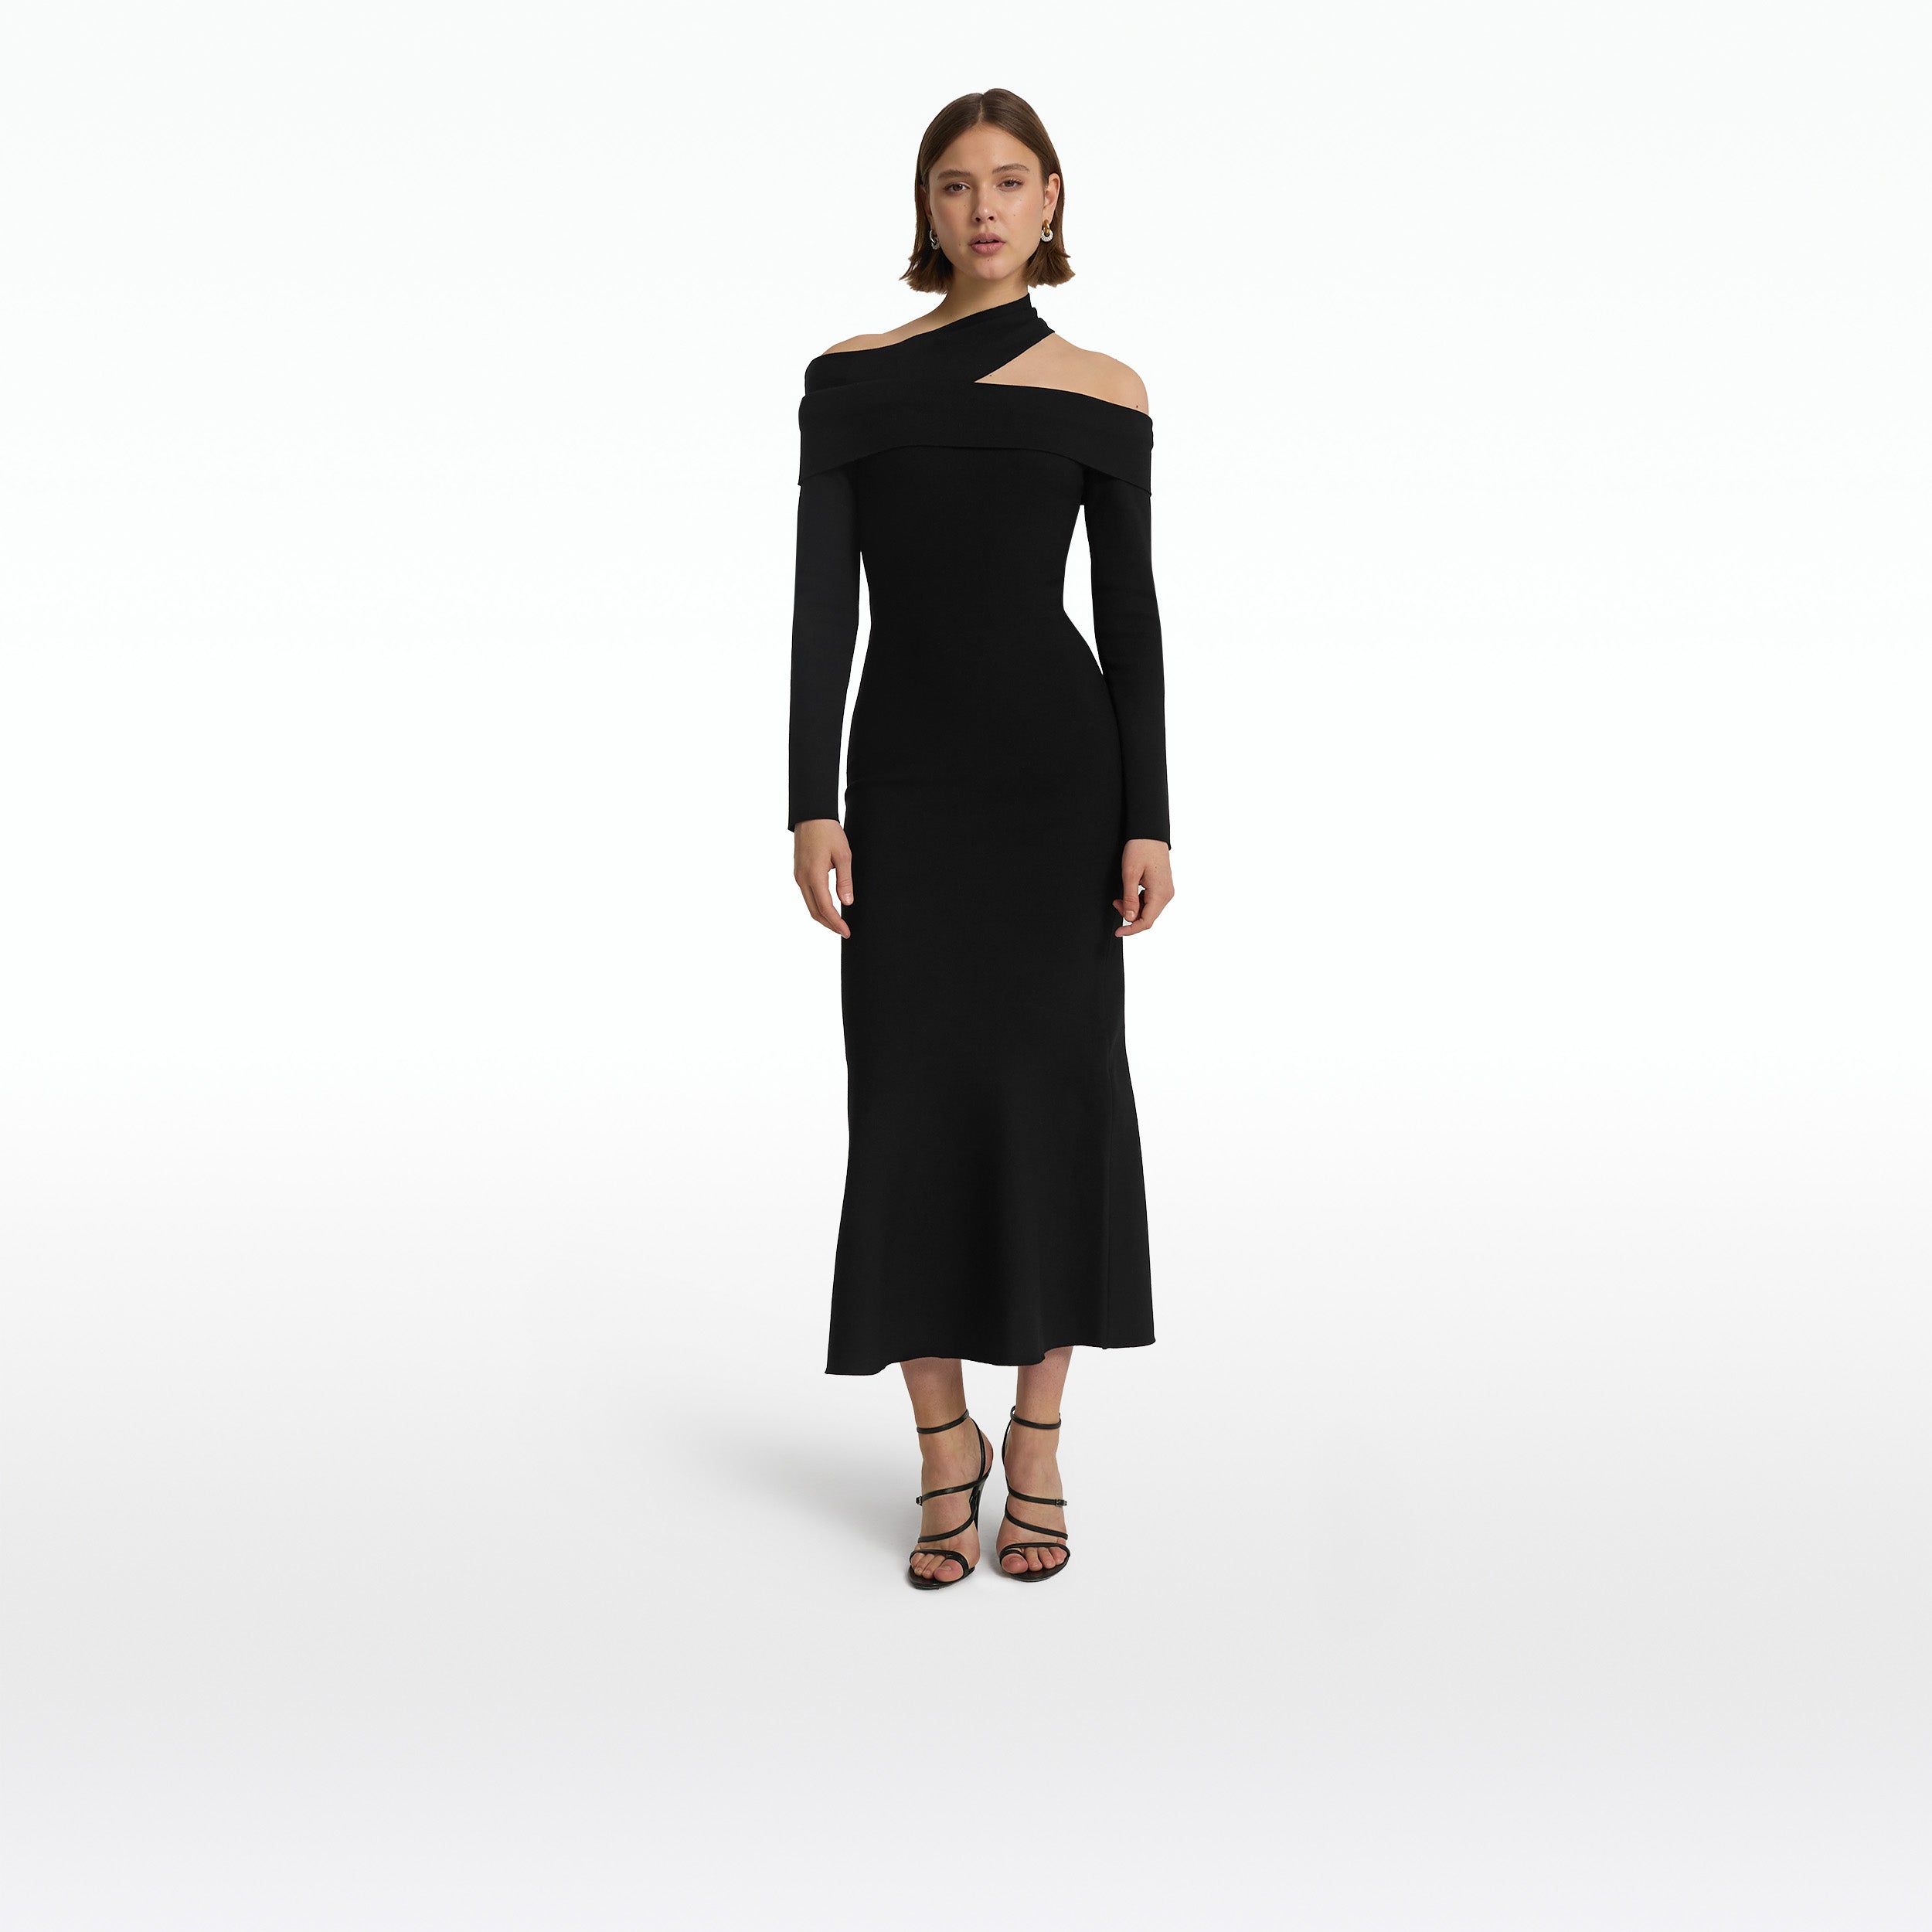 Tuiren Black Knit Midi Dress